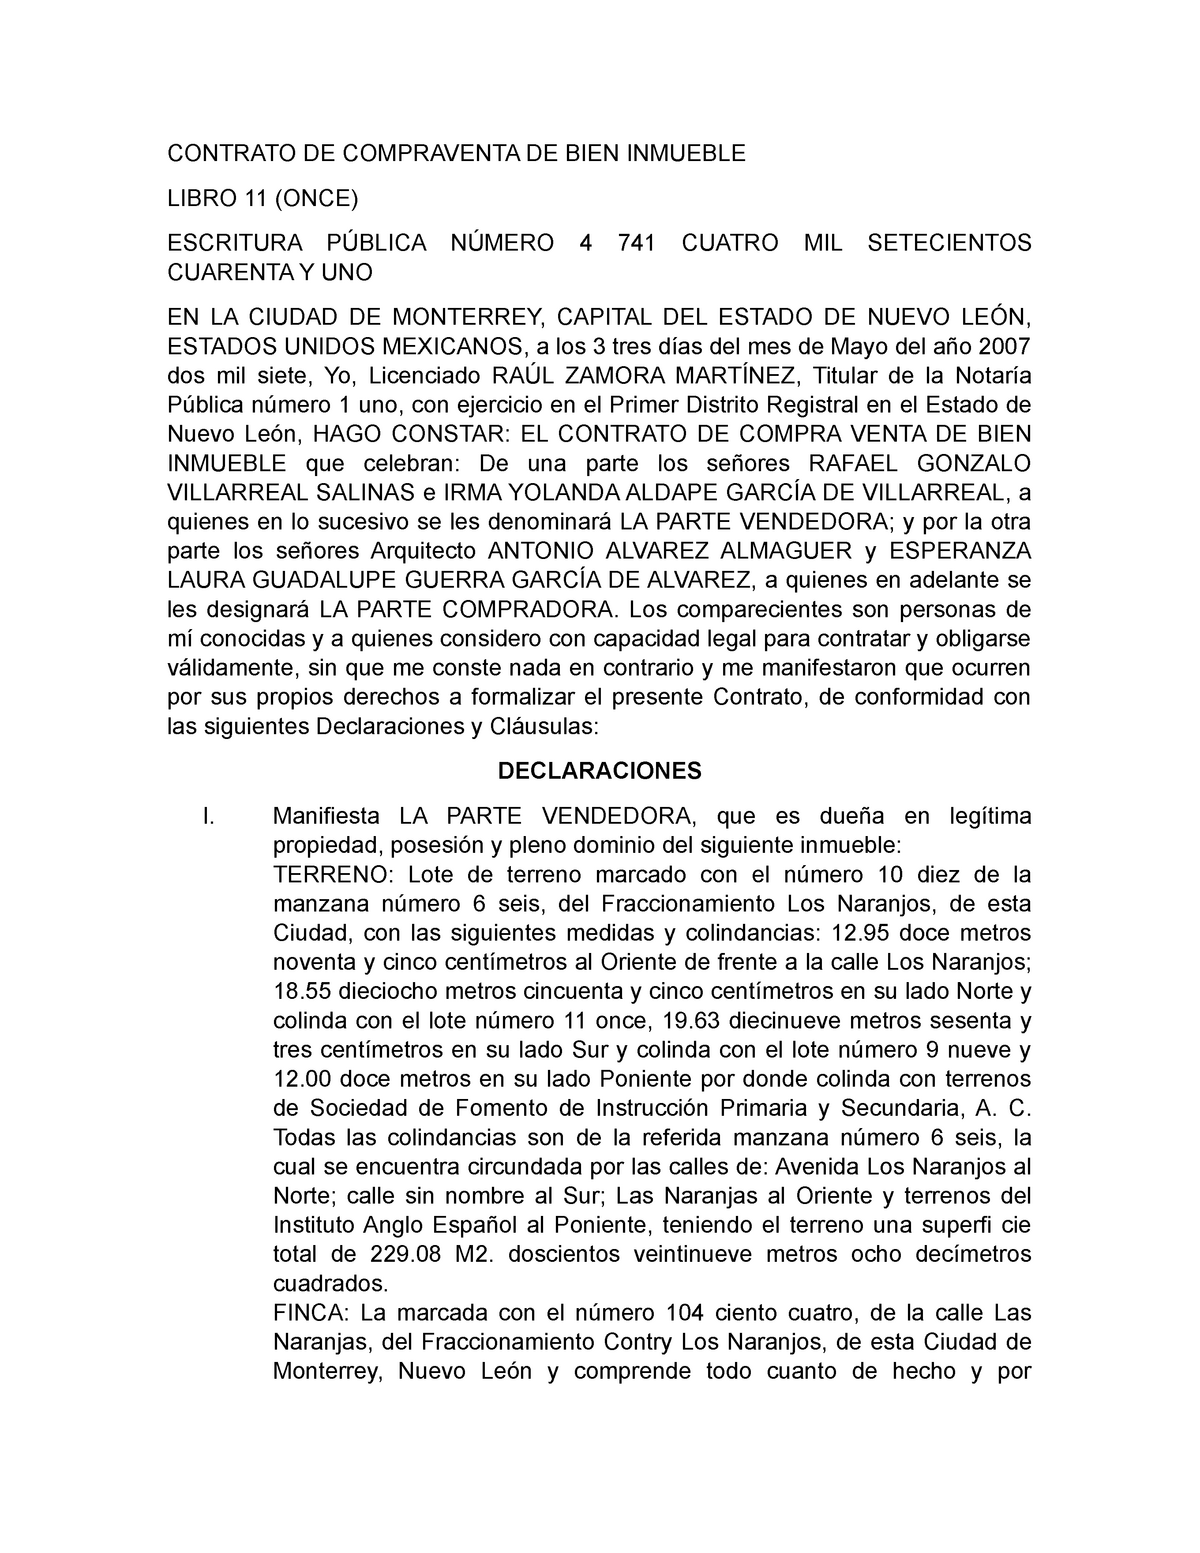 Contrato de Compraventa de Bien Inmueble - CONTRATO DE COMPRAVENTA DE BIEN  INMUEBLE LIBRO 11 (ONCE) - Studocu